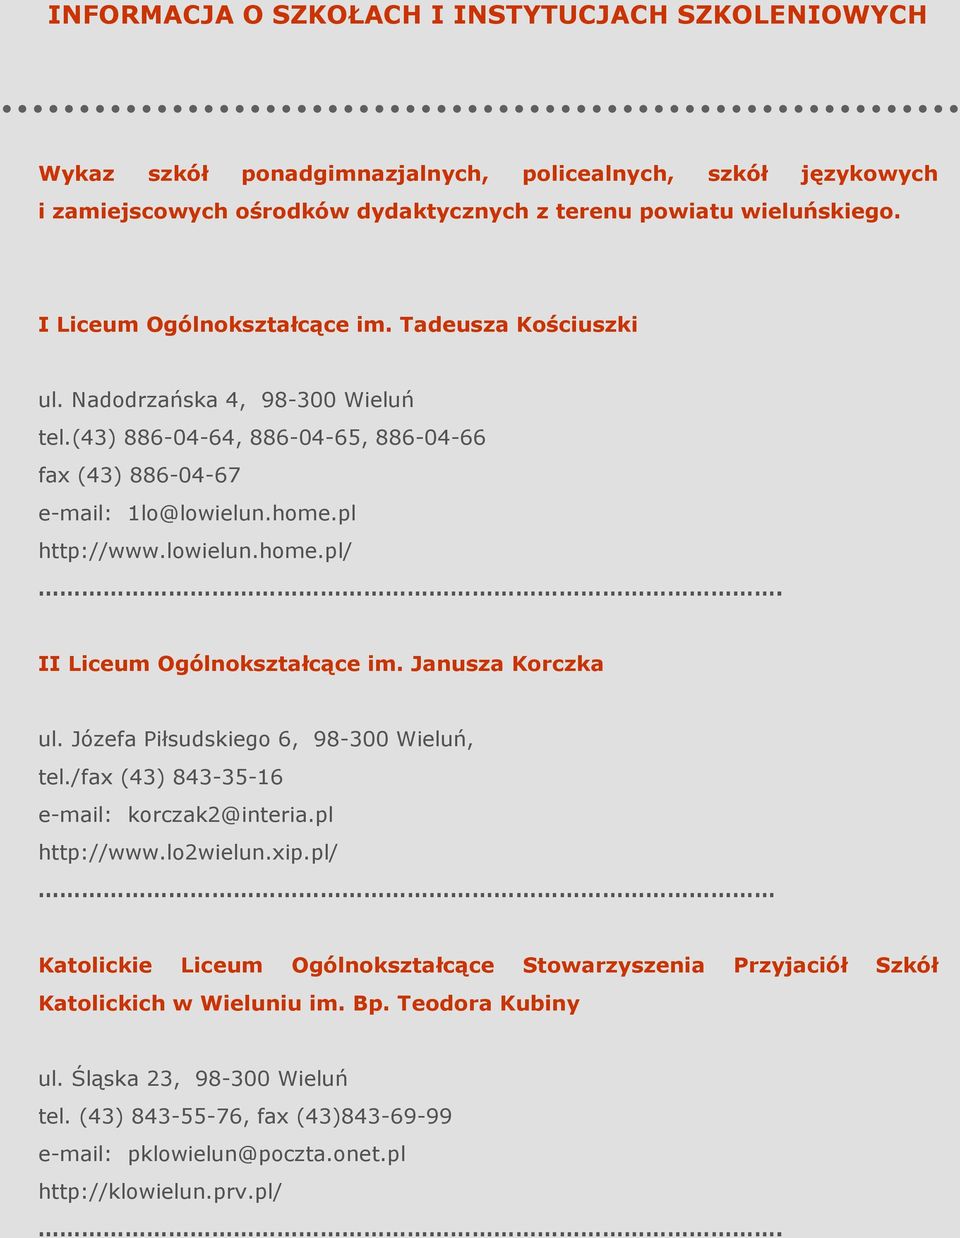 II Liceum Ogólnokształcące im. Janusza Korczka ul. Józefa Piłsudskiego 6, 98-300 Wieluń, tel./fax (43) 843-35-16 e-mail: korczak2@interia.pl http://www.lo2wielun.xip.